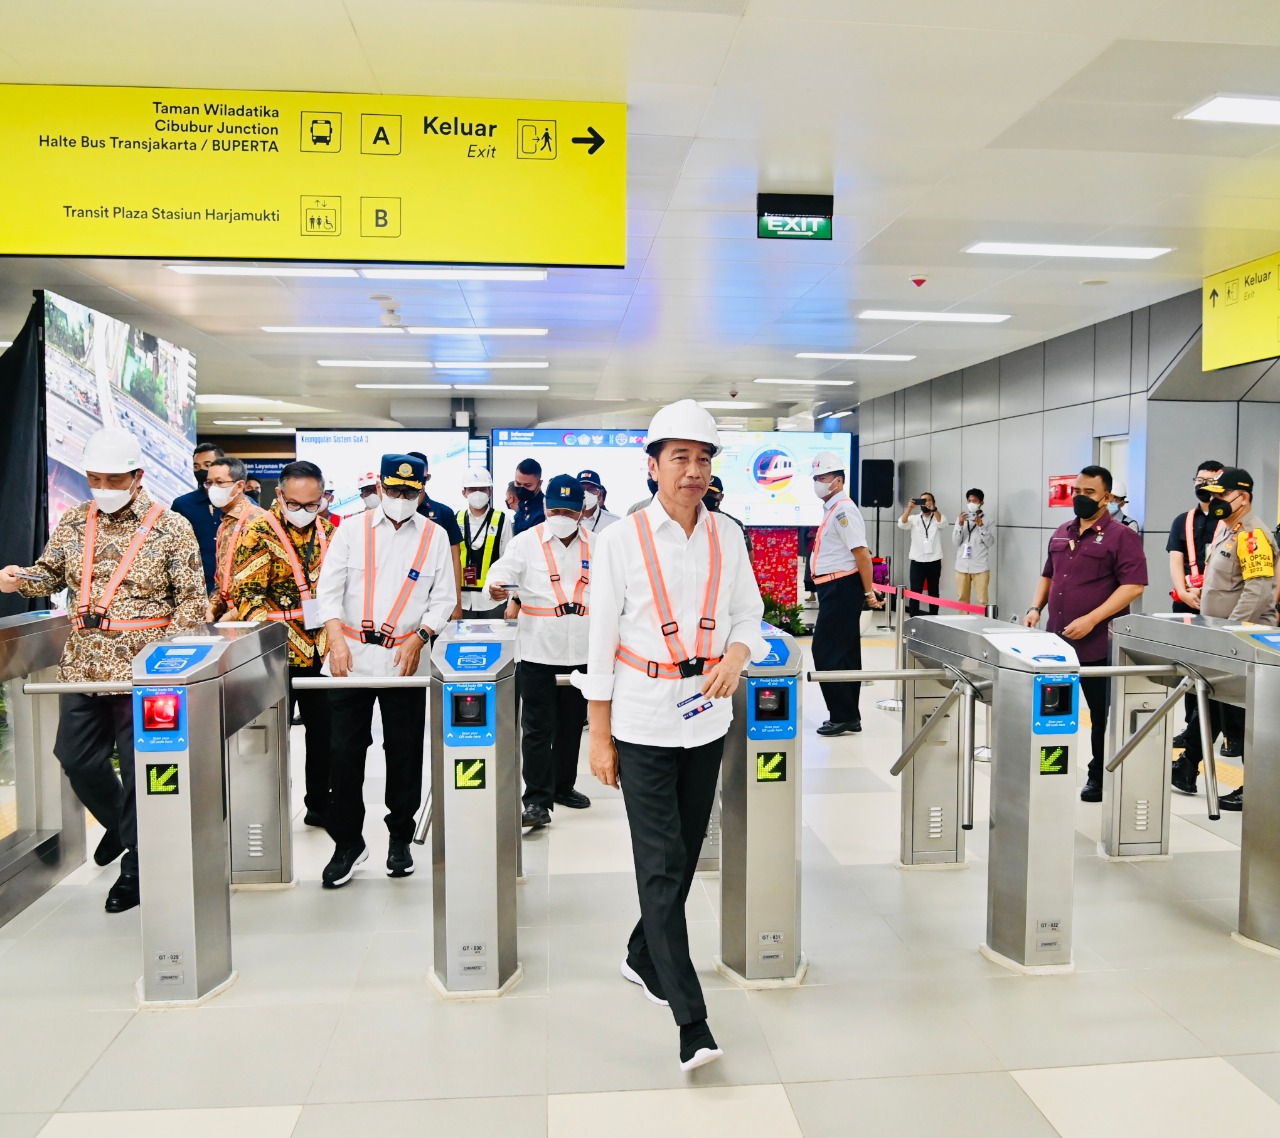 Gembira Naik Kereta Tanpa Masinis, Jokowi Ingin LRT Jabodetabek Resmi Operasi Juli 2023